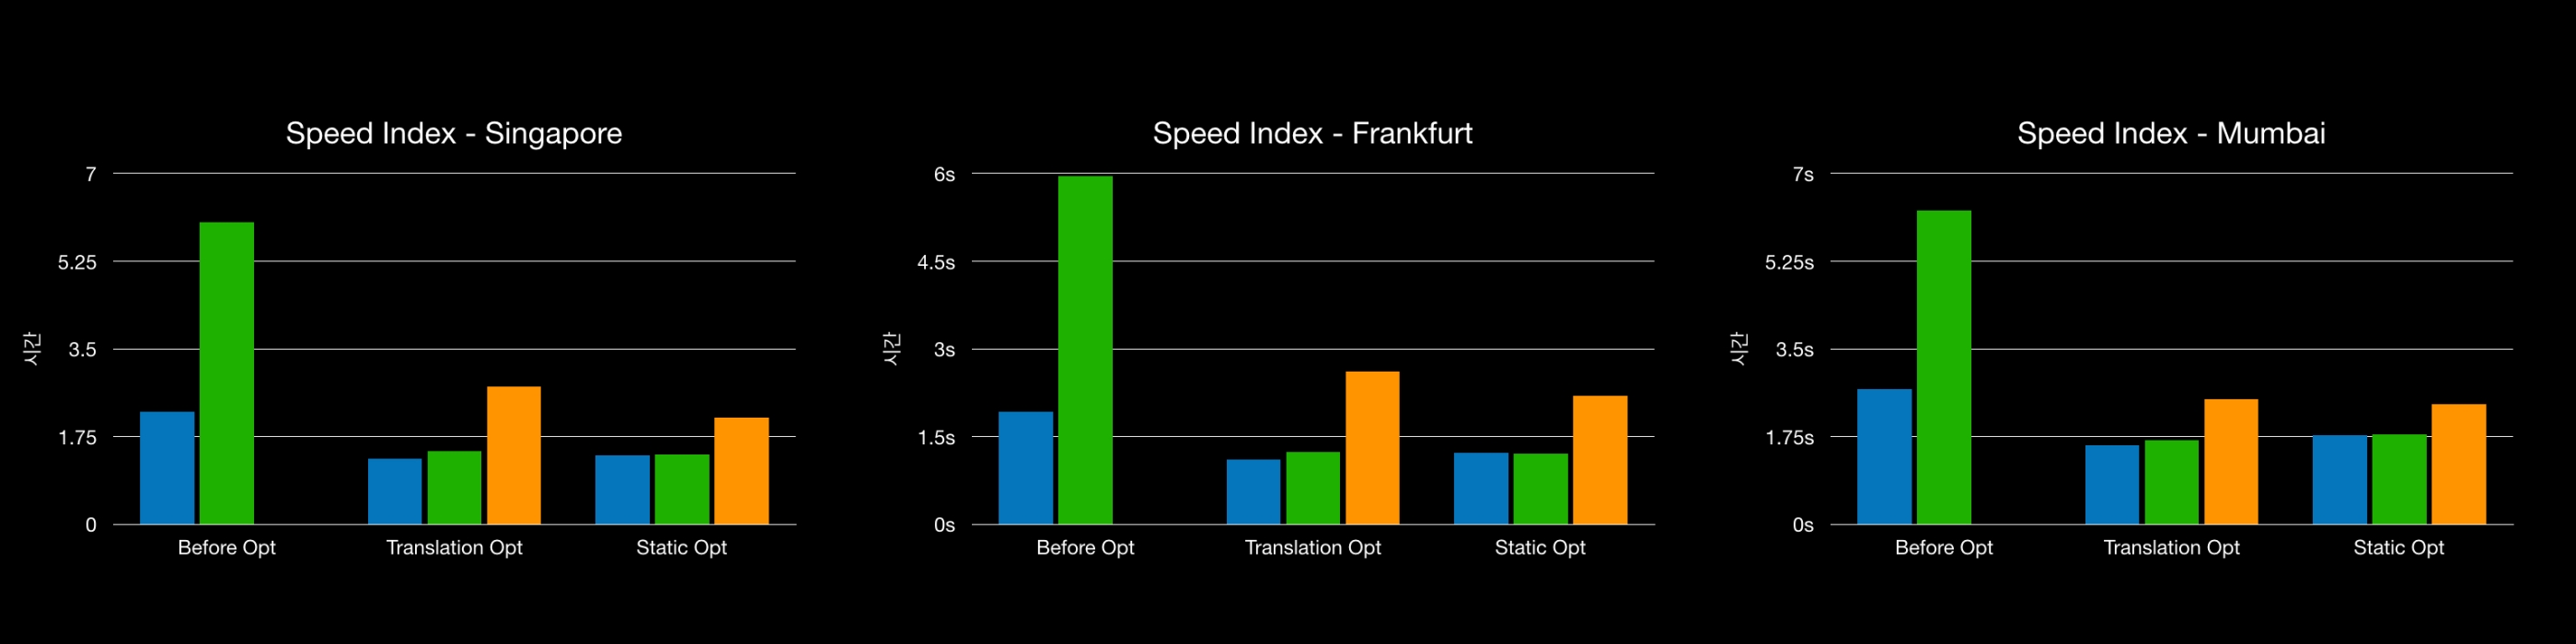 Speed index